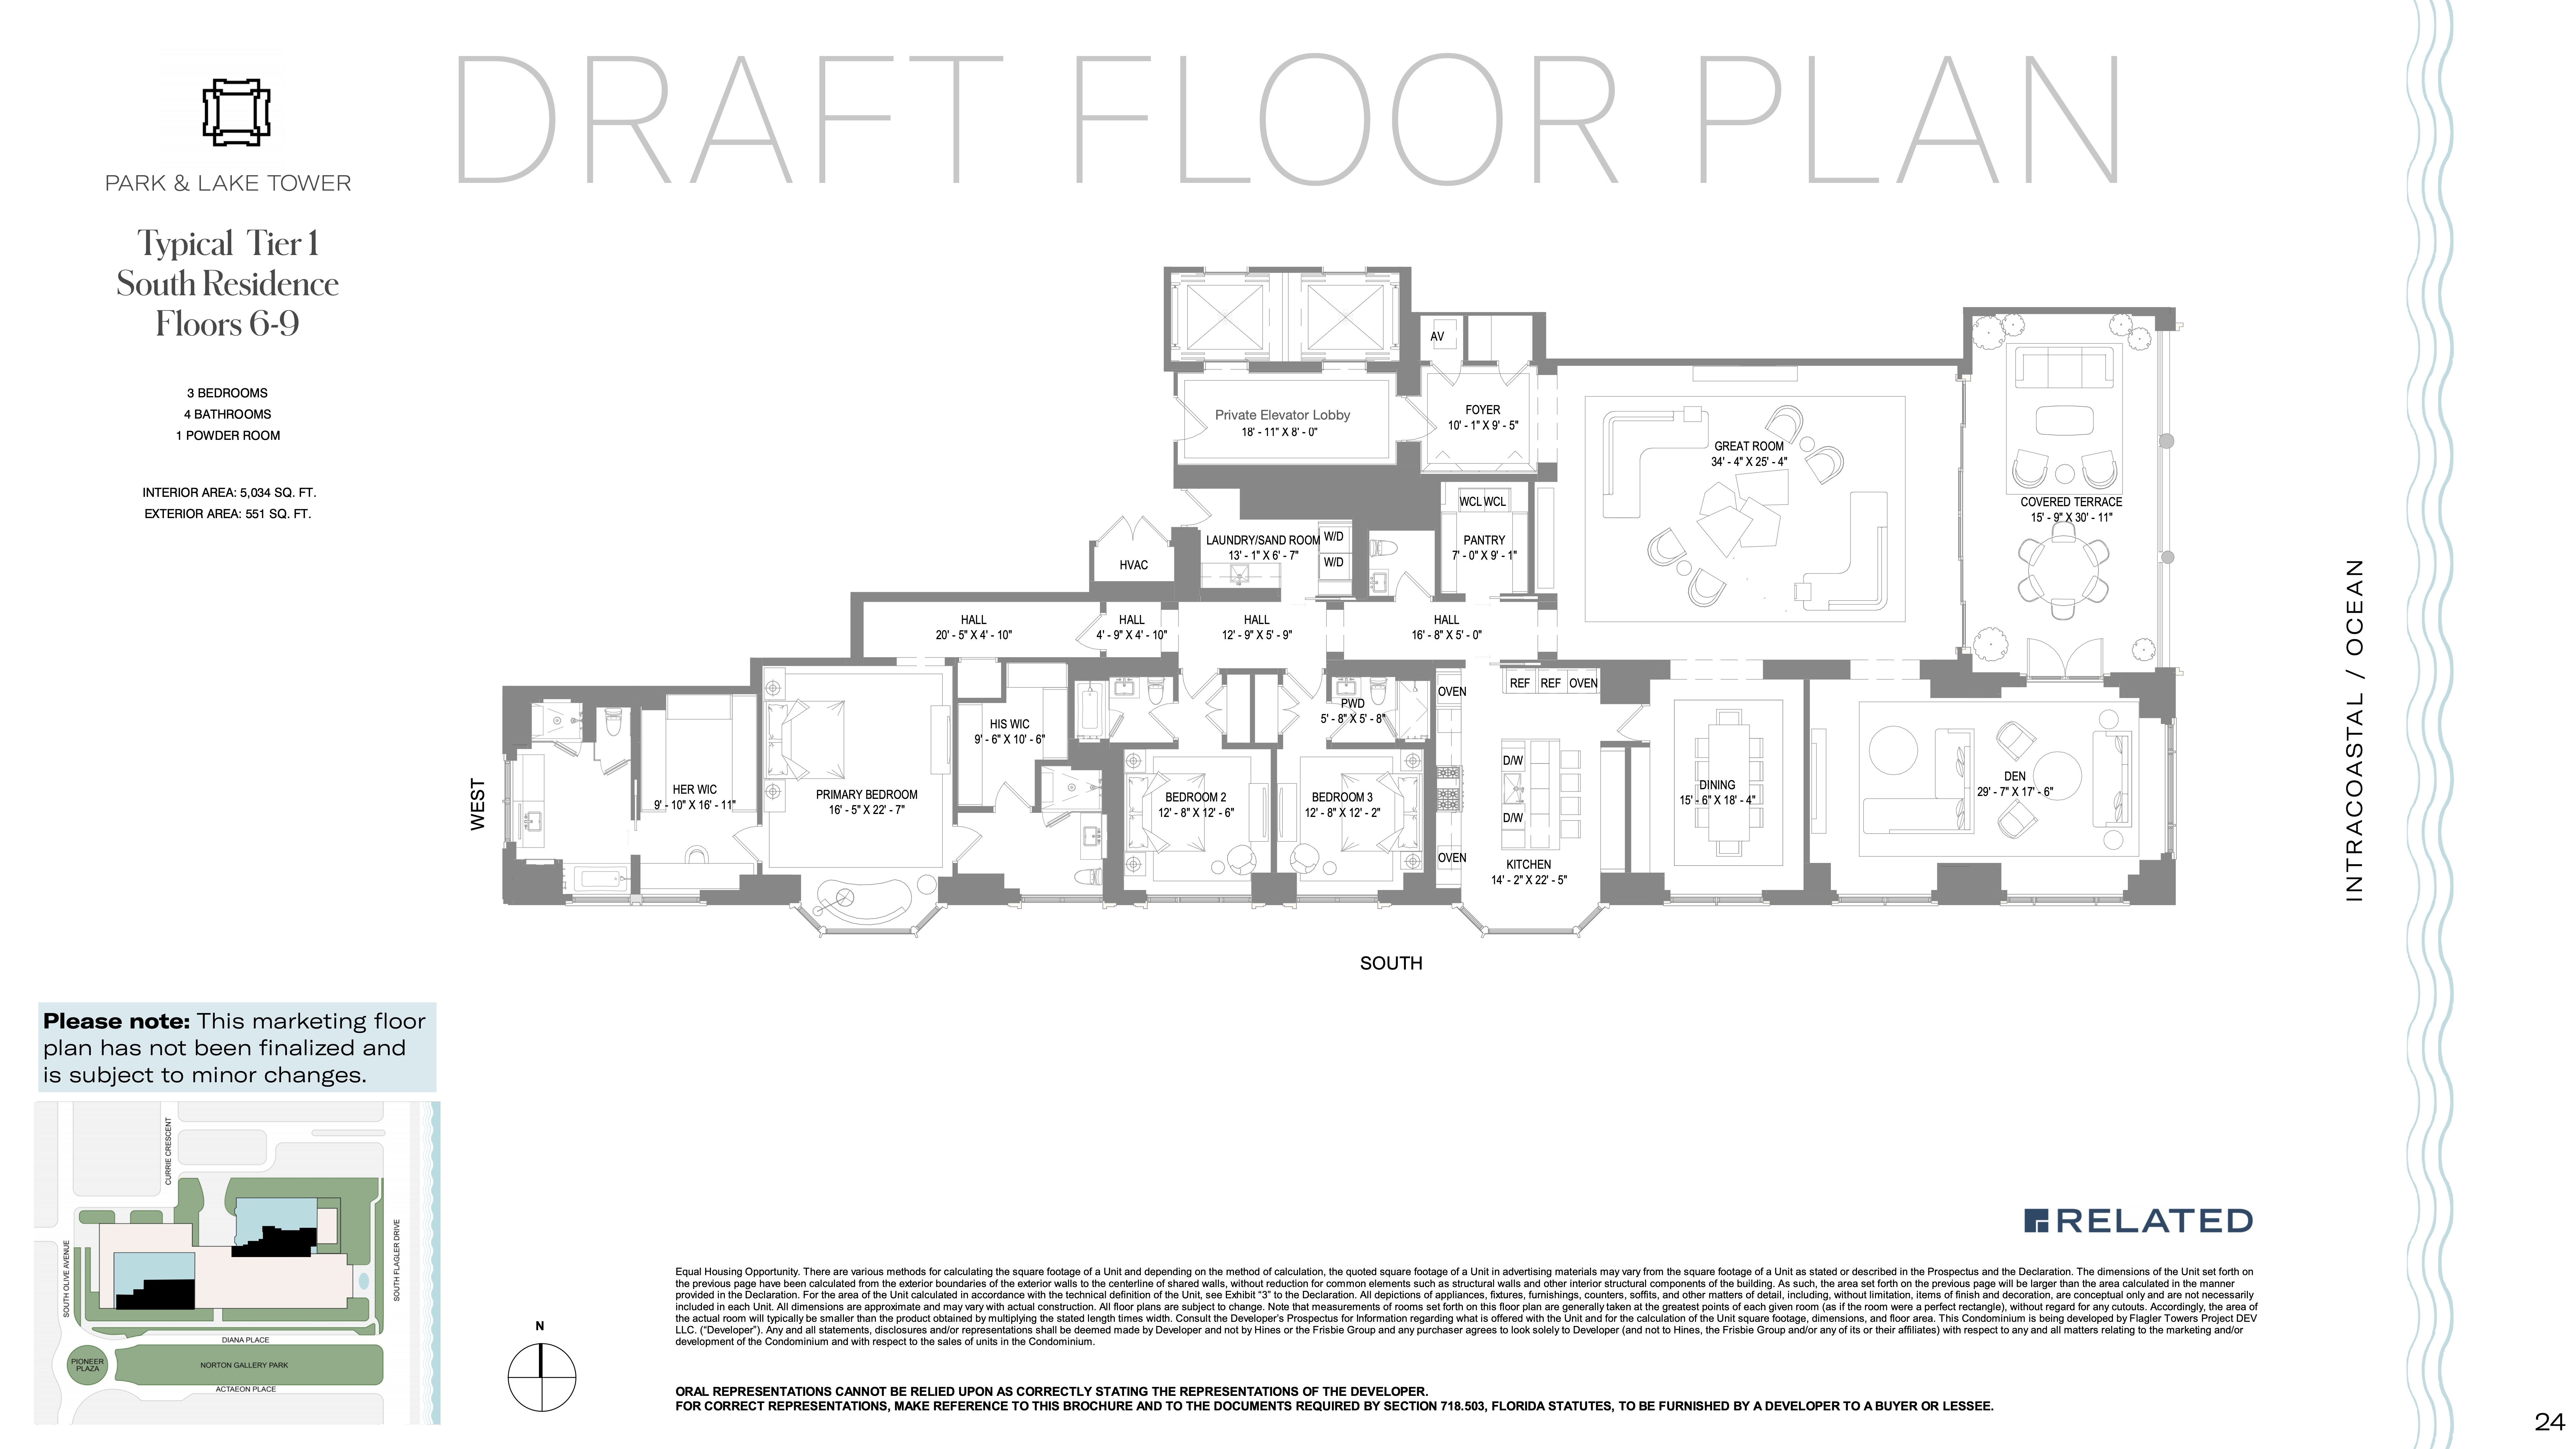 Floor Plan for South Flagler House Floorplans, Tier 1 South Residence Floors 6-9